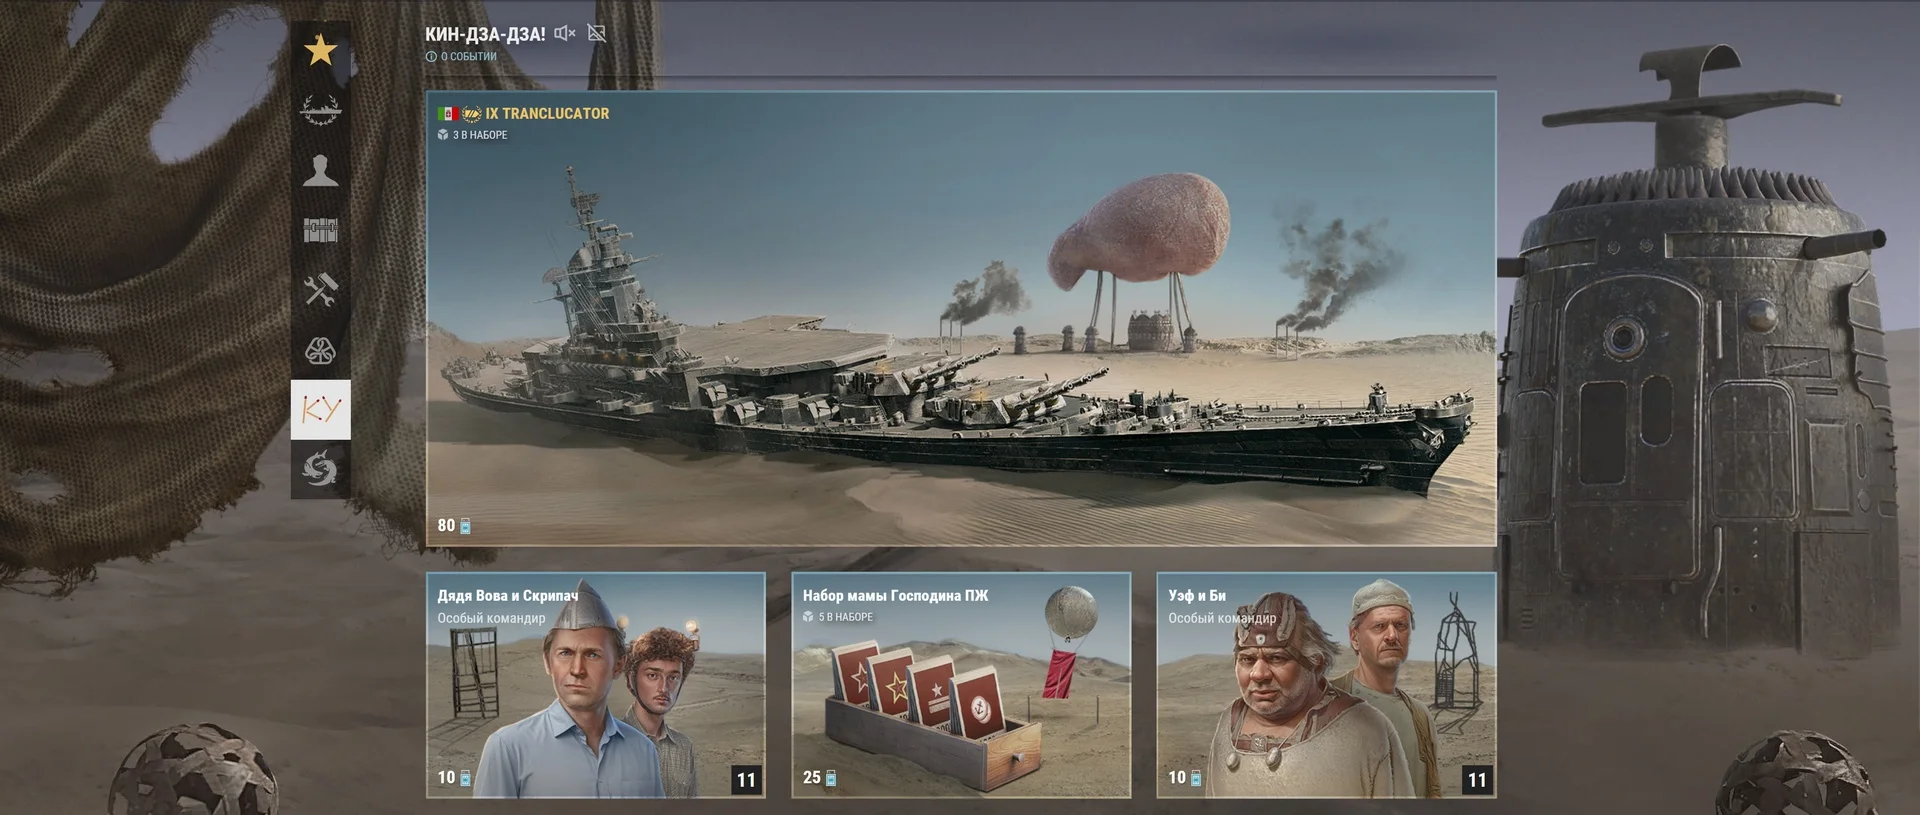 Пепелацы, луц и Tranclucator в «Мире кораблей»: в игре началось событие по фильму «Кин-дза-дза!» - фото 1